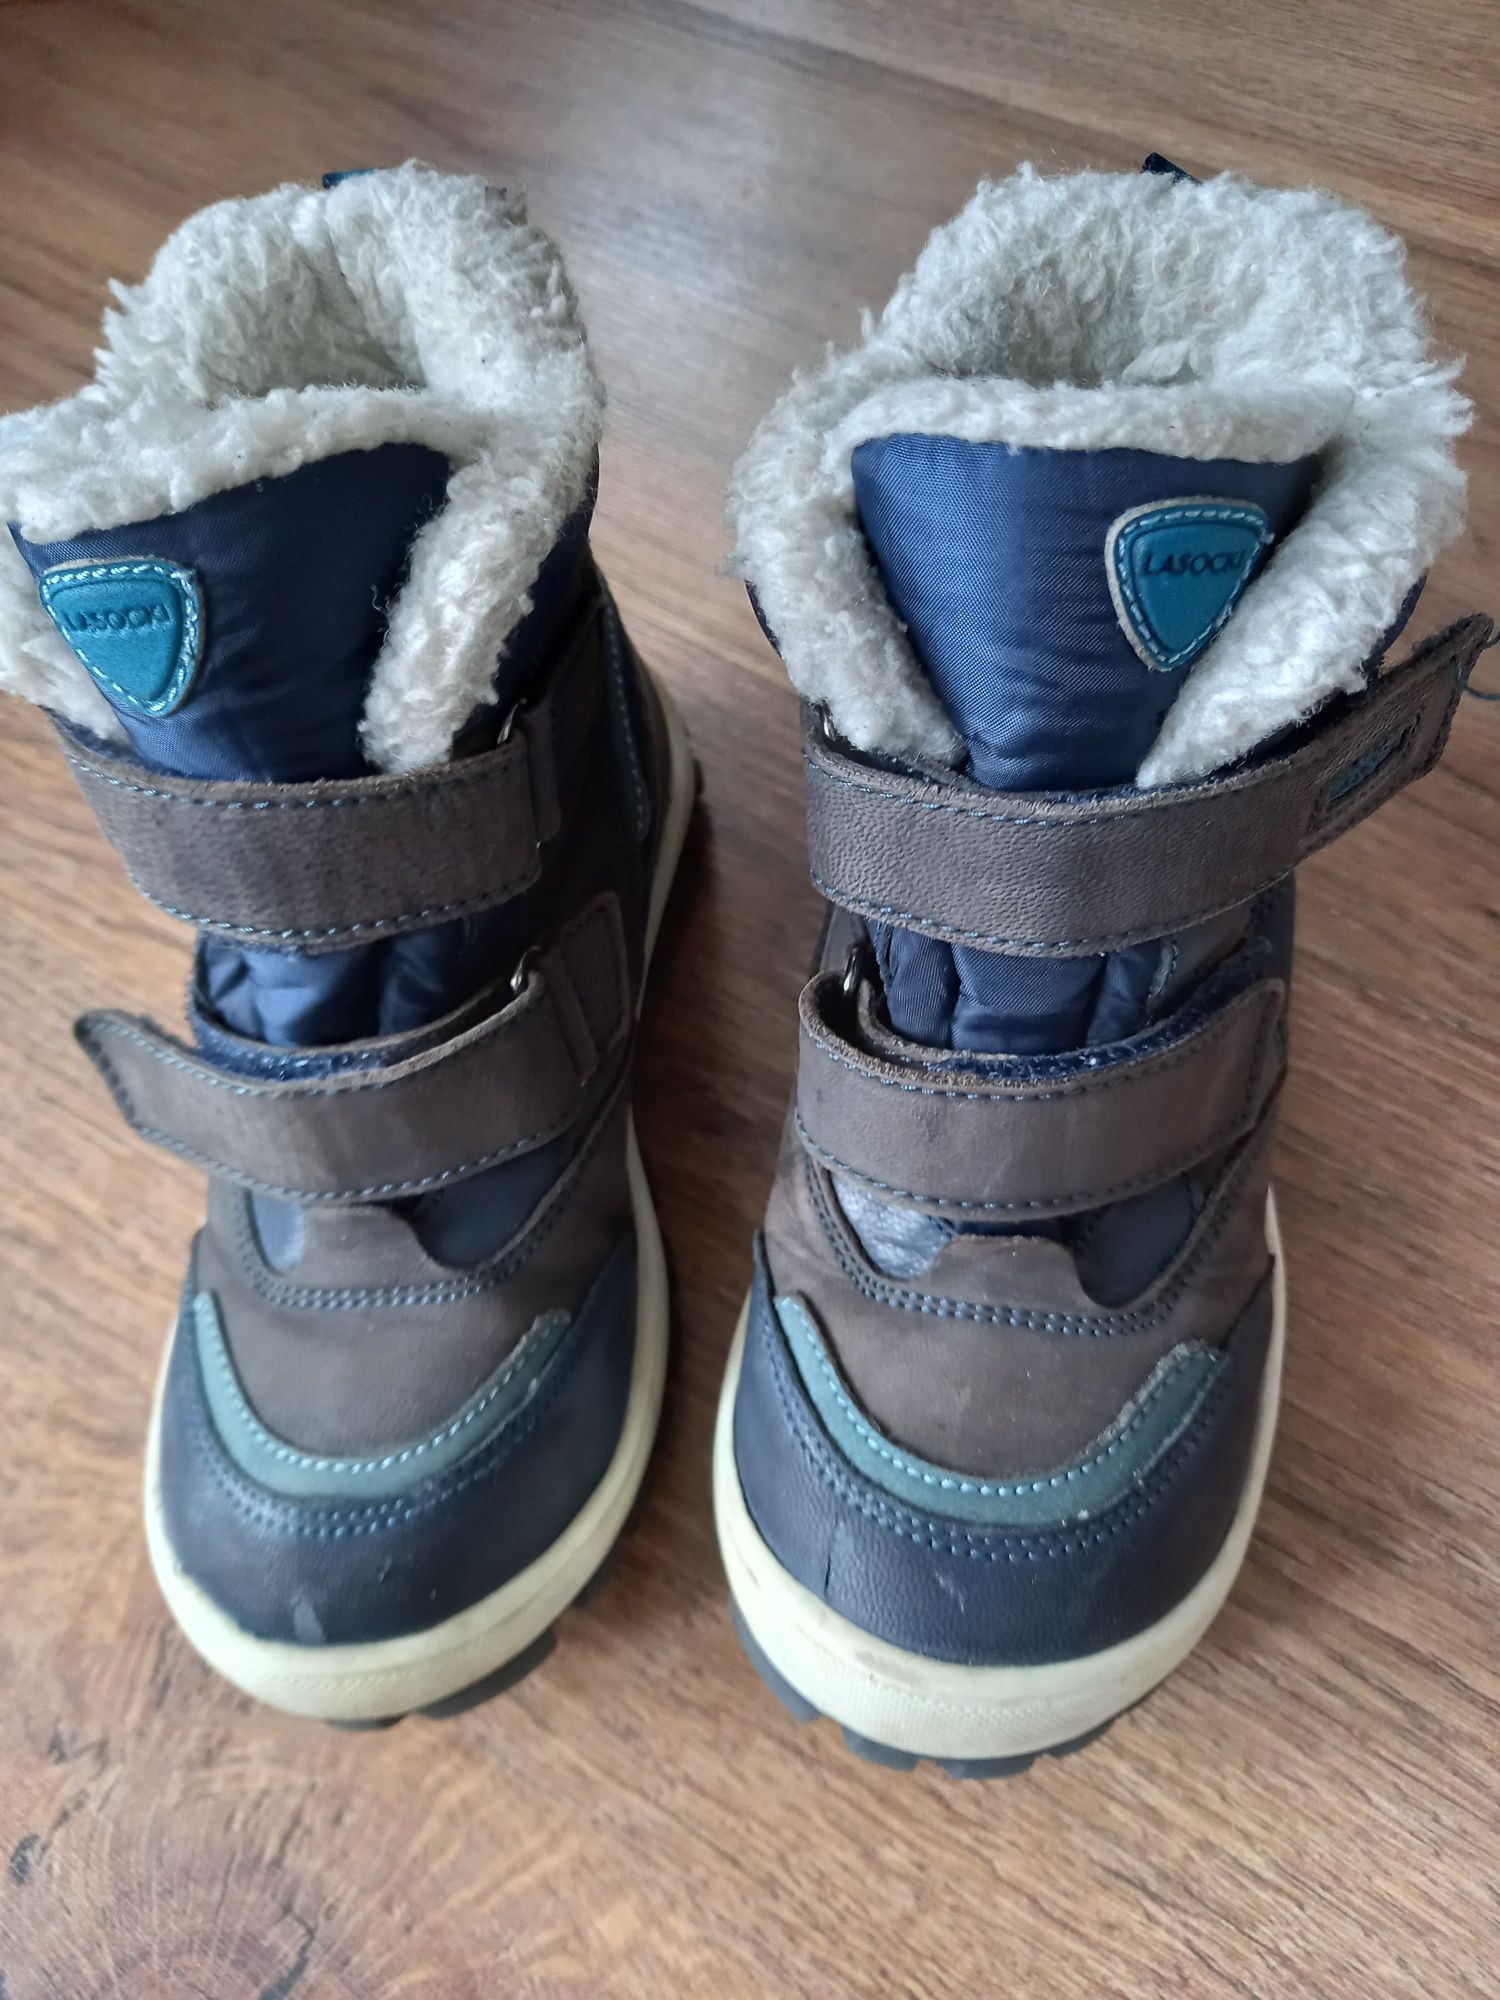 Buty zimowe chłopięce r. 28, Lasocki, śniegowce